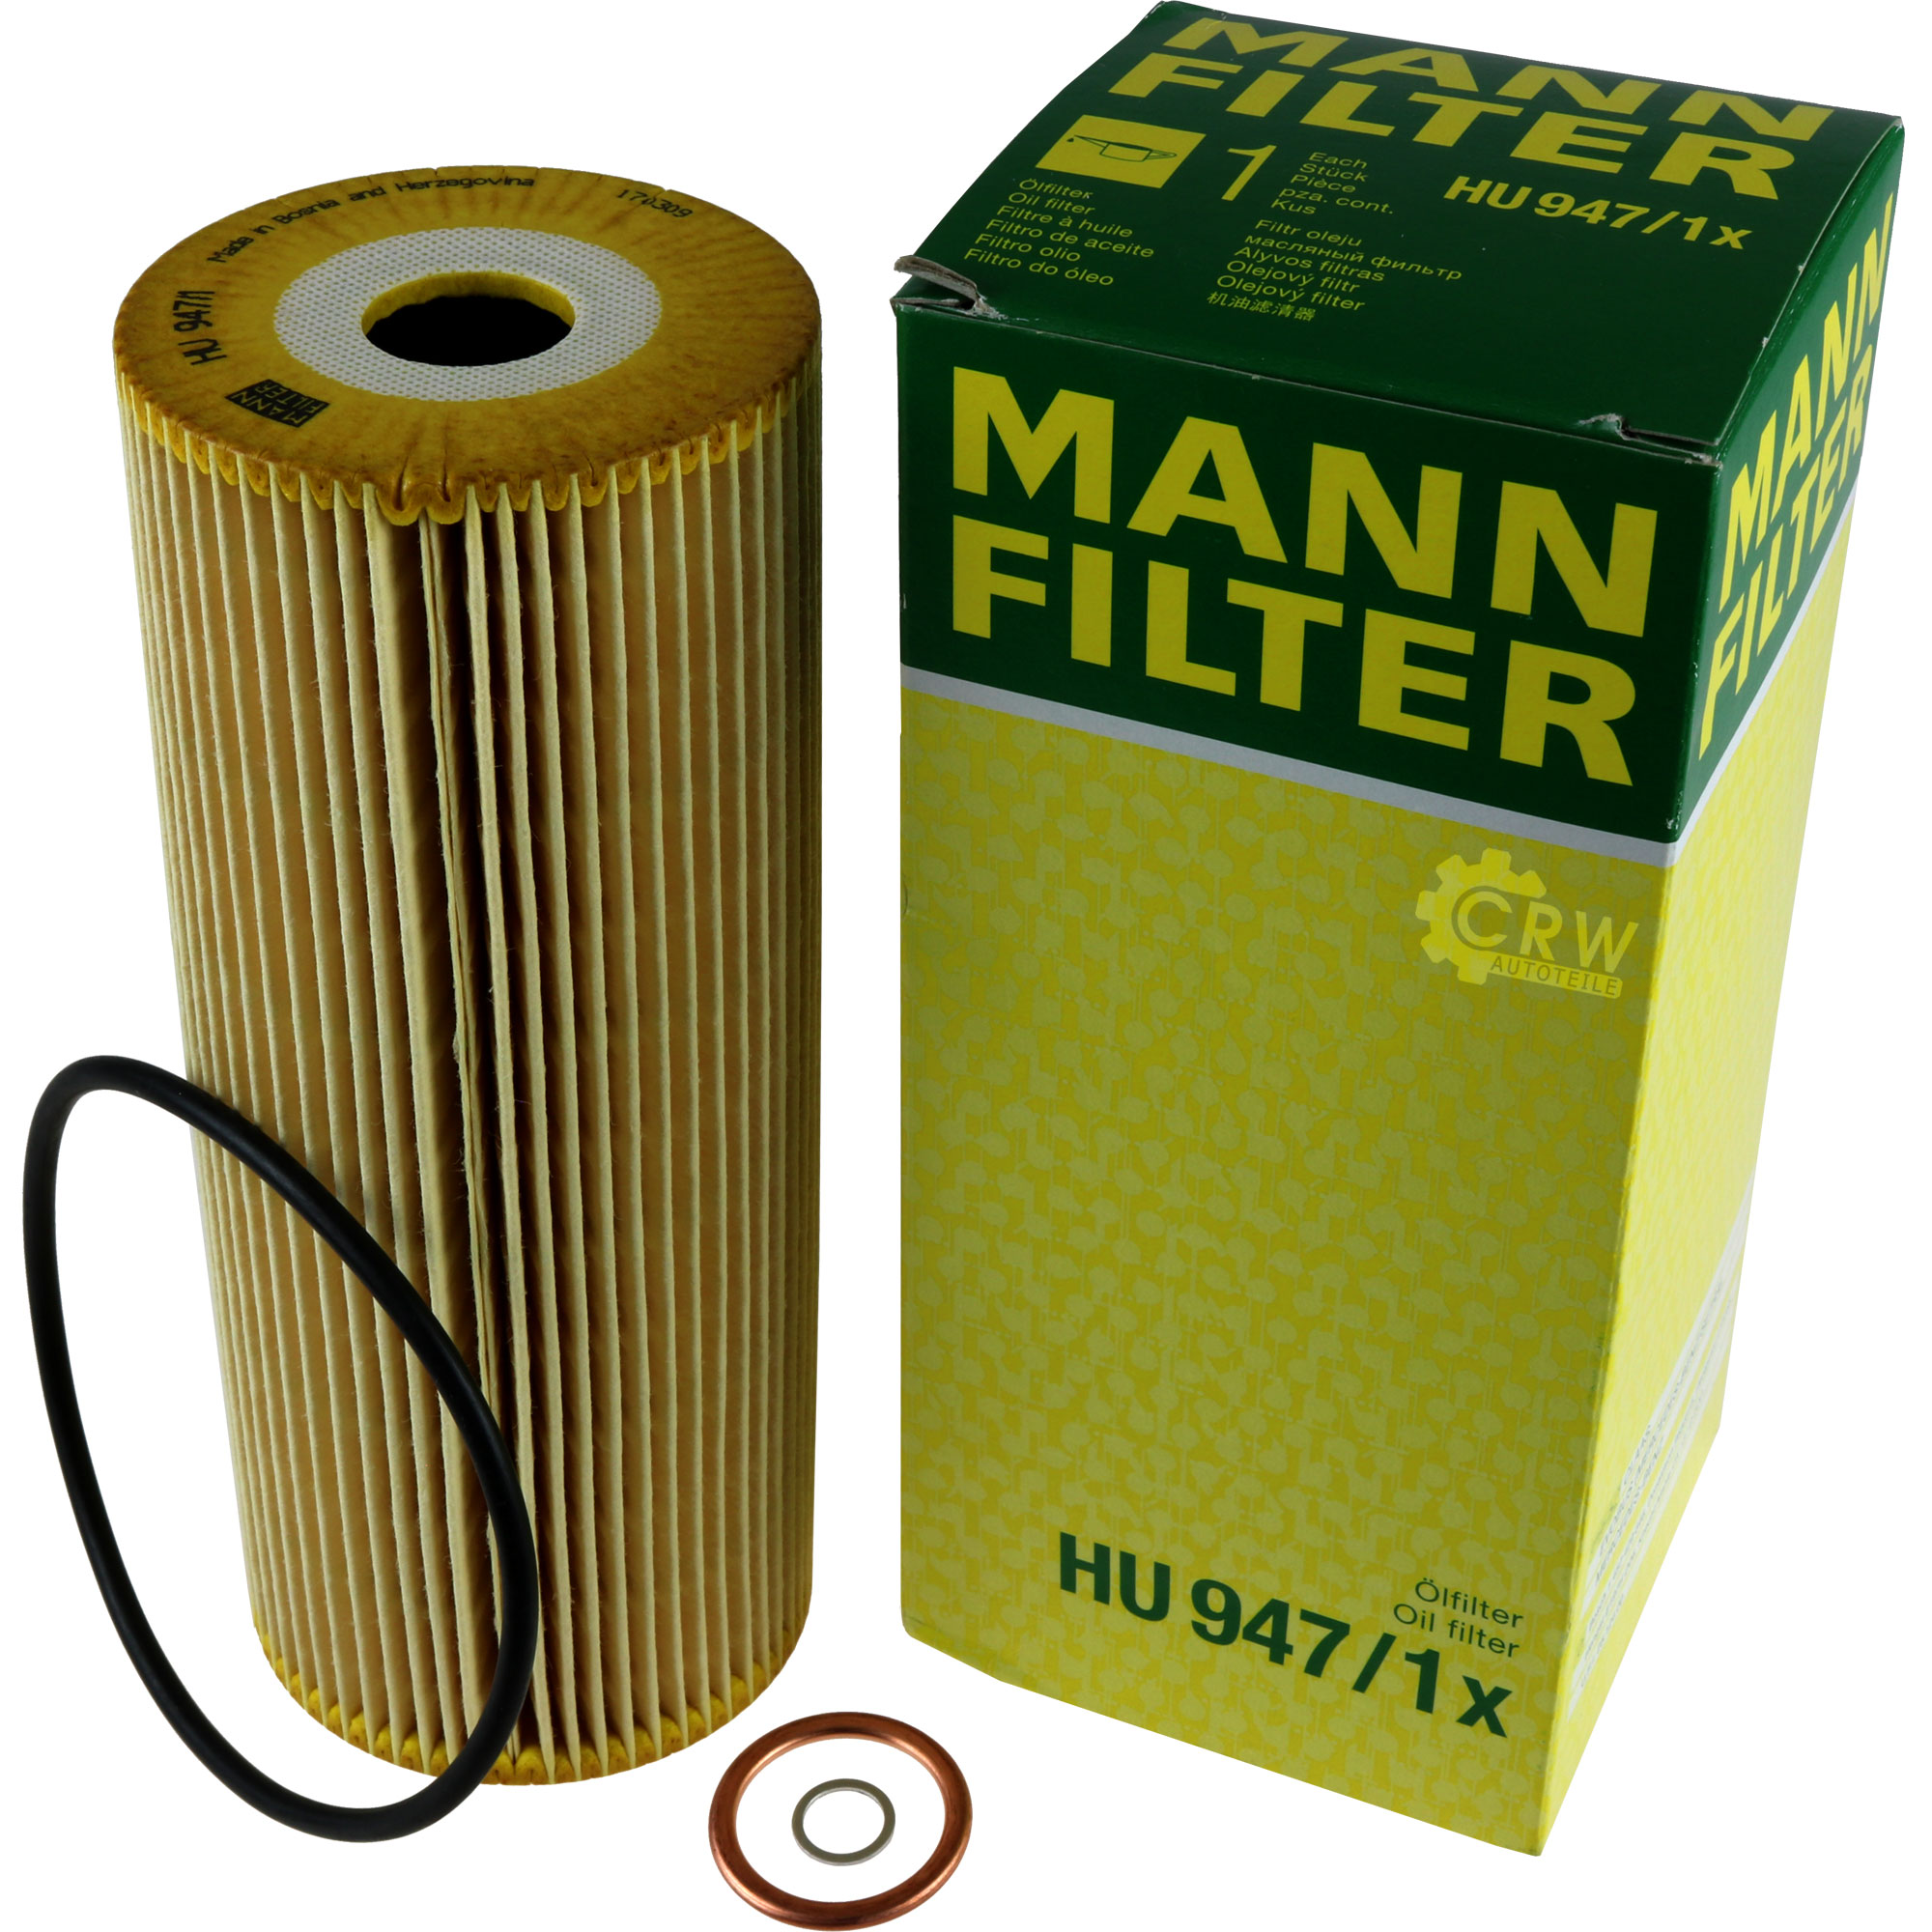 MANN-FILTER Ölfilter Oelfilter HU 947/1 x Oil Filter